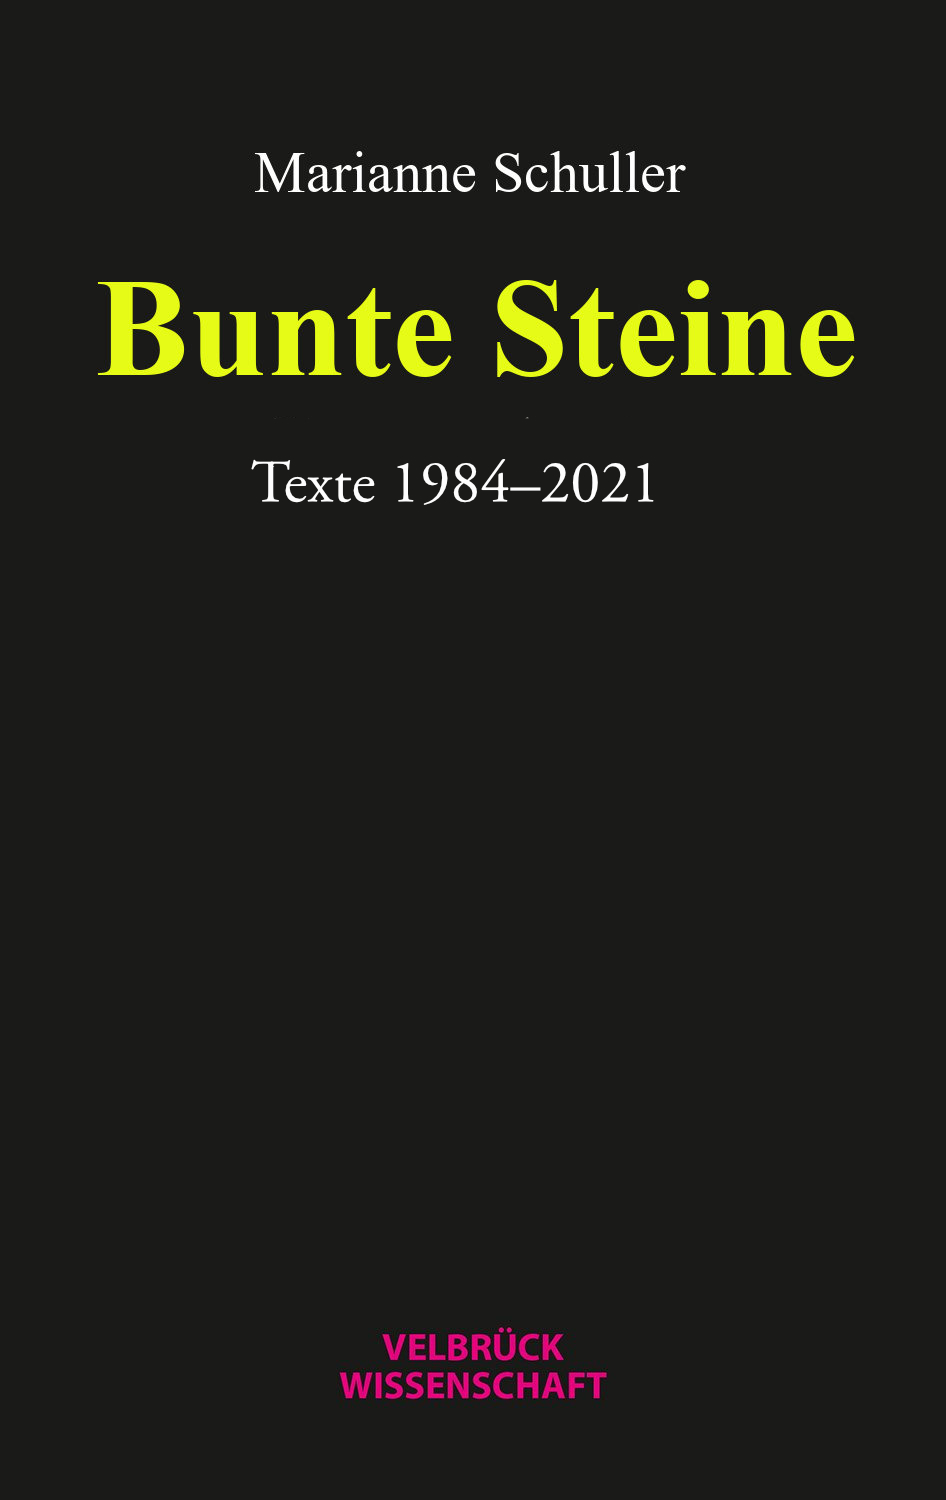 Titel des Buches: Marianne Schuller. Bunte Steine. Texte.